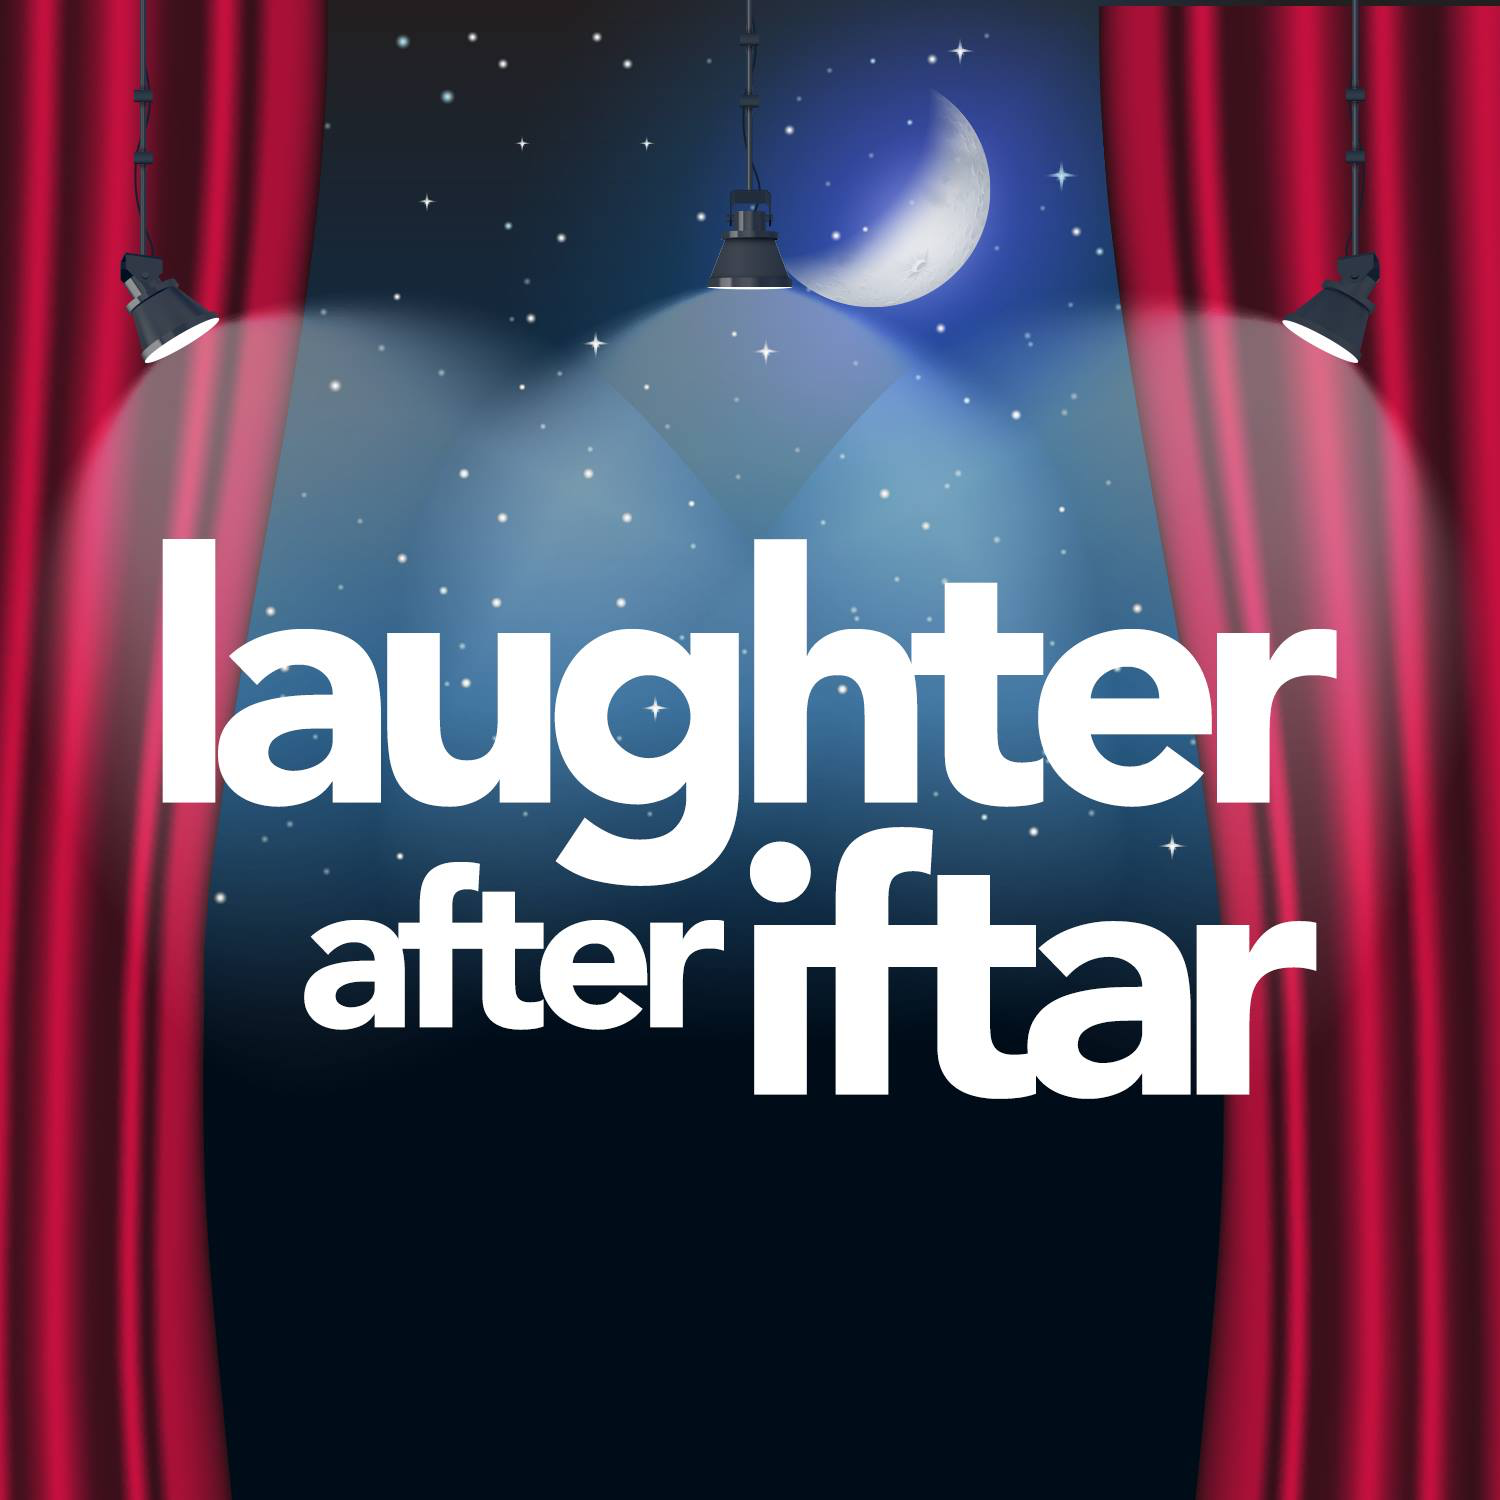 laughter after Iftar comedy show ramadan Karachi